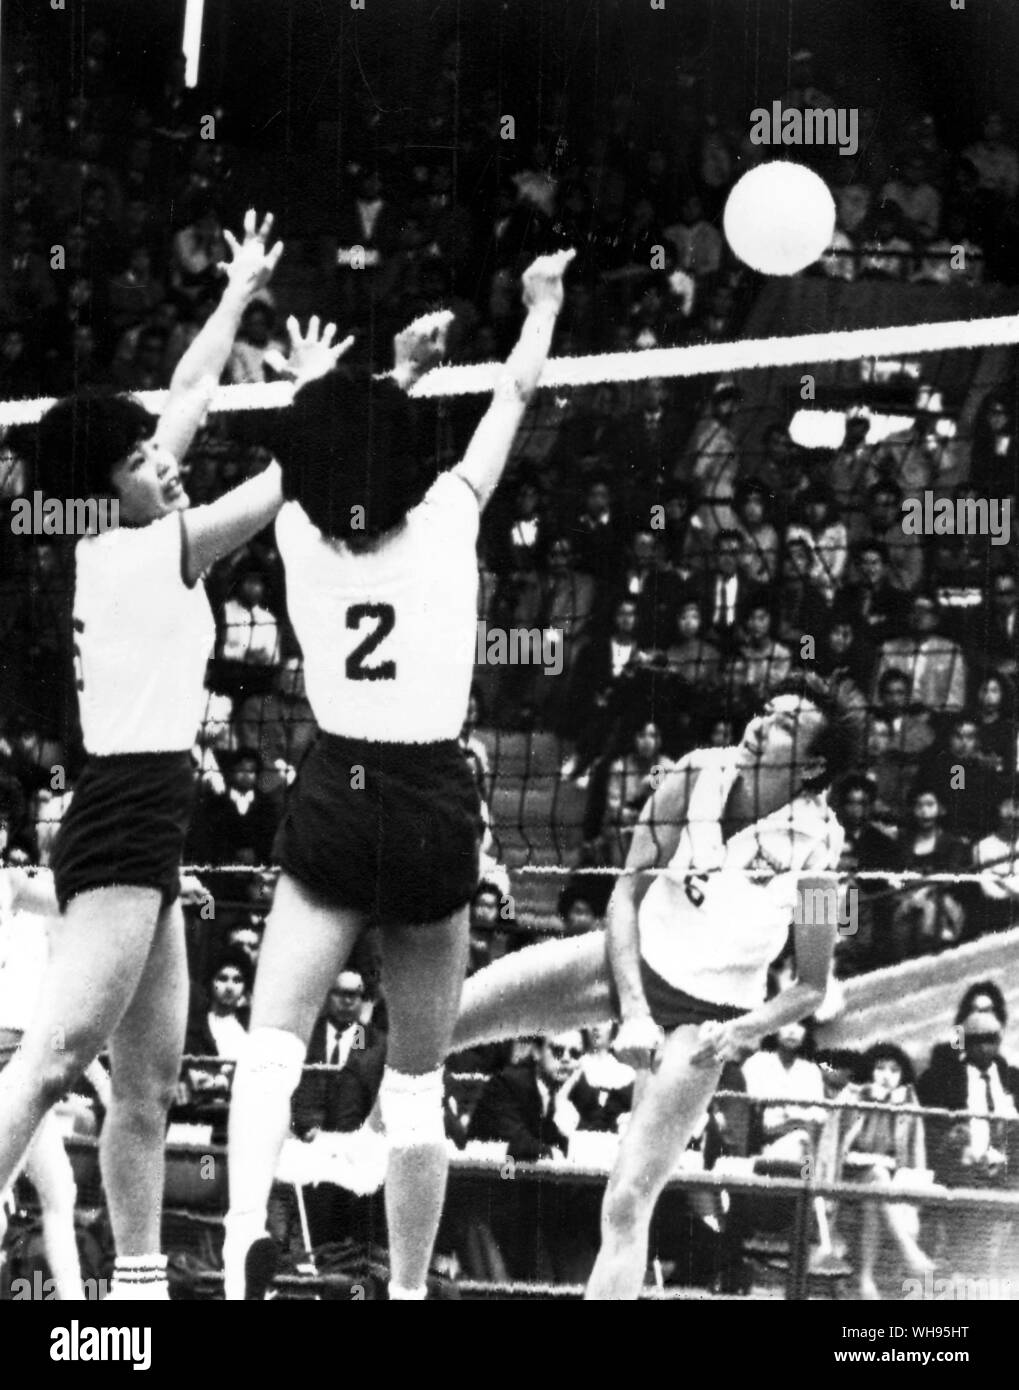 Japan, Tokio Olympics, 1964: Women's Volleyball zwischen Japan und Polen. Japans Miyamoto (Nr. 2) und Matsunura (#5) LEAP einen Schuß von Polens Kordaczeuk zu blockieren. Stockfoto